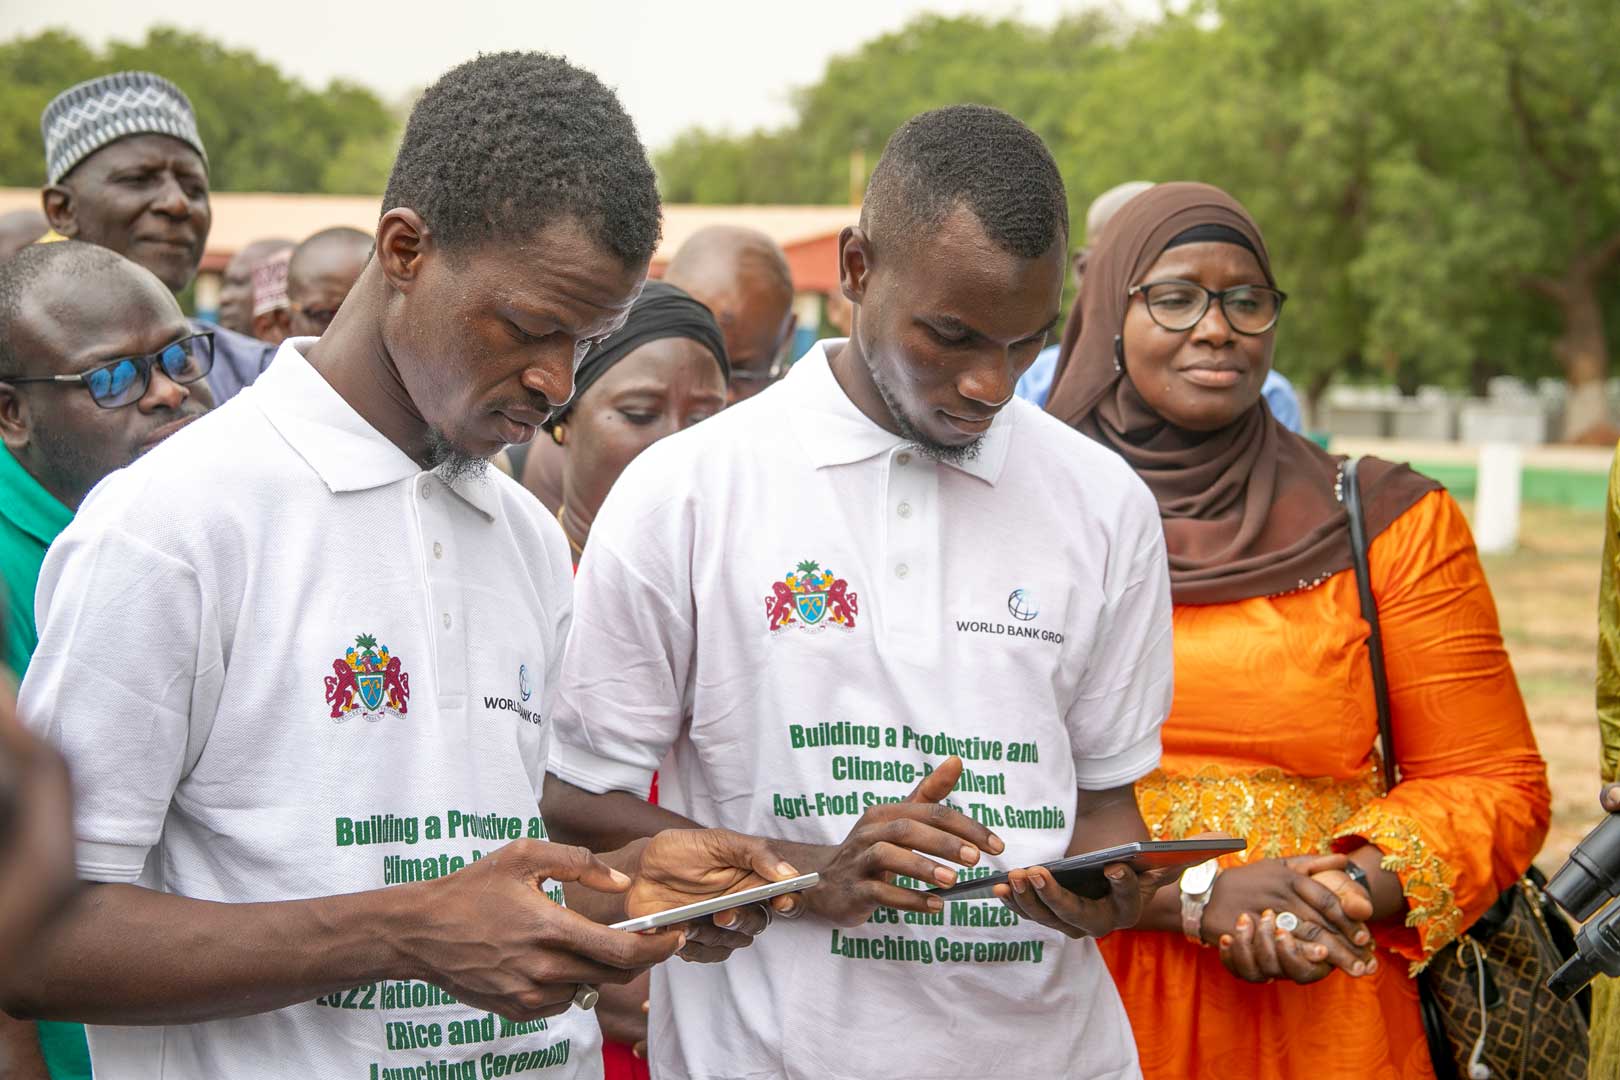 Gambie : Plus de 12 mille petits exploitants dotés de semences certifiées